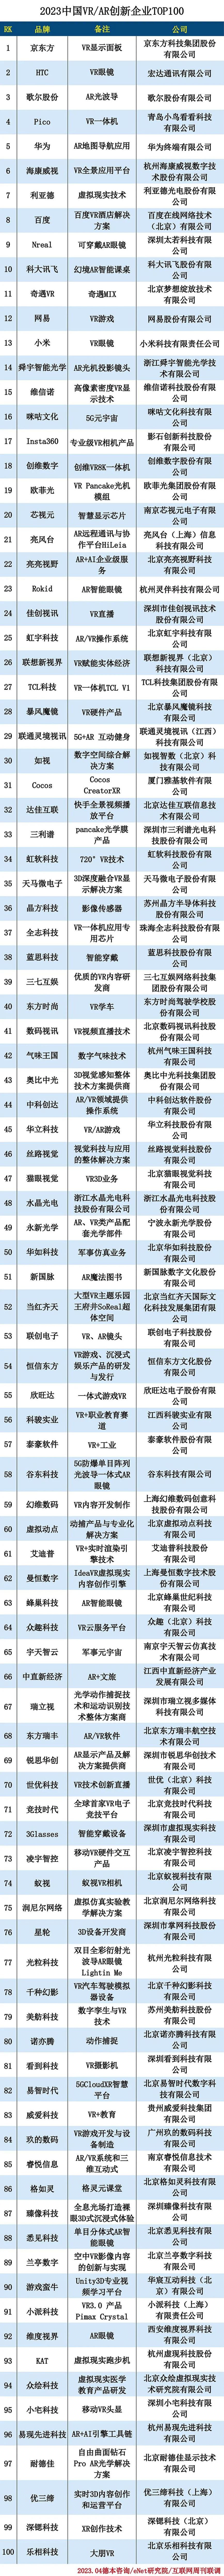 2022 中国VR/AR创新企业TOP100